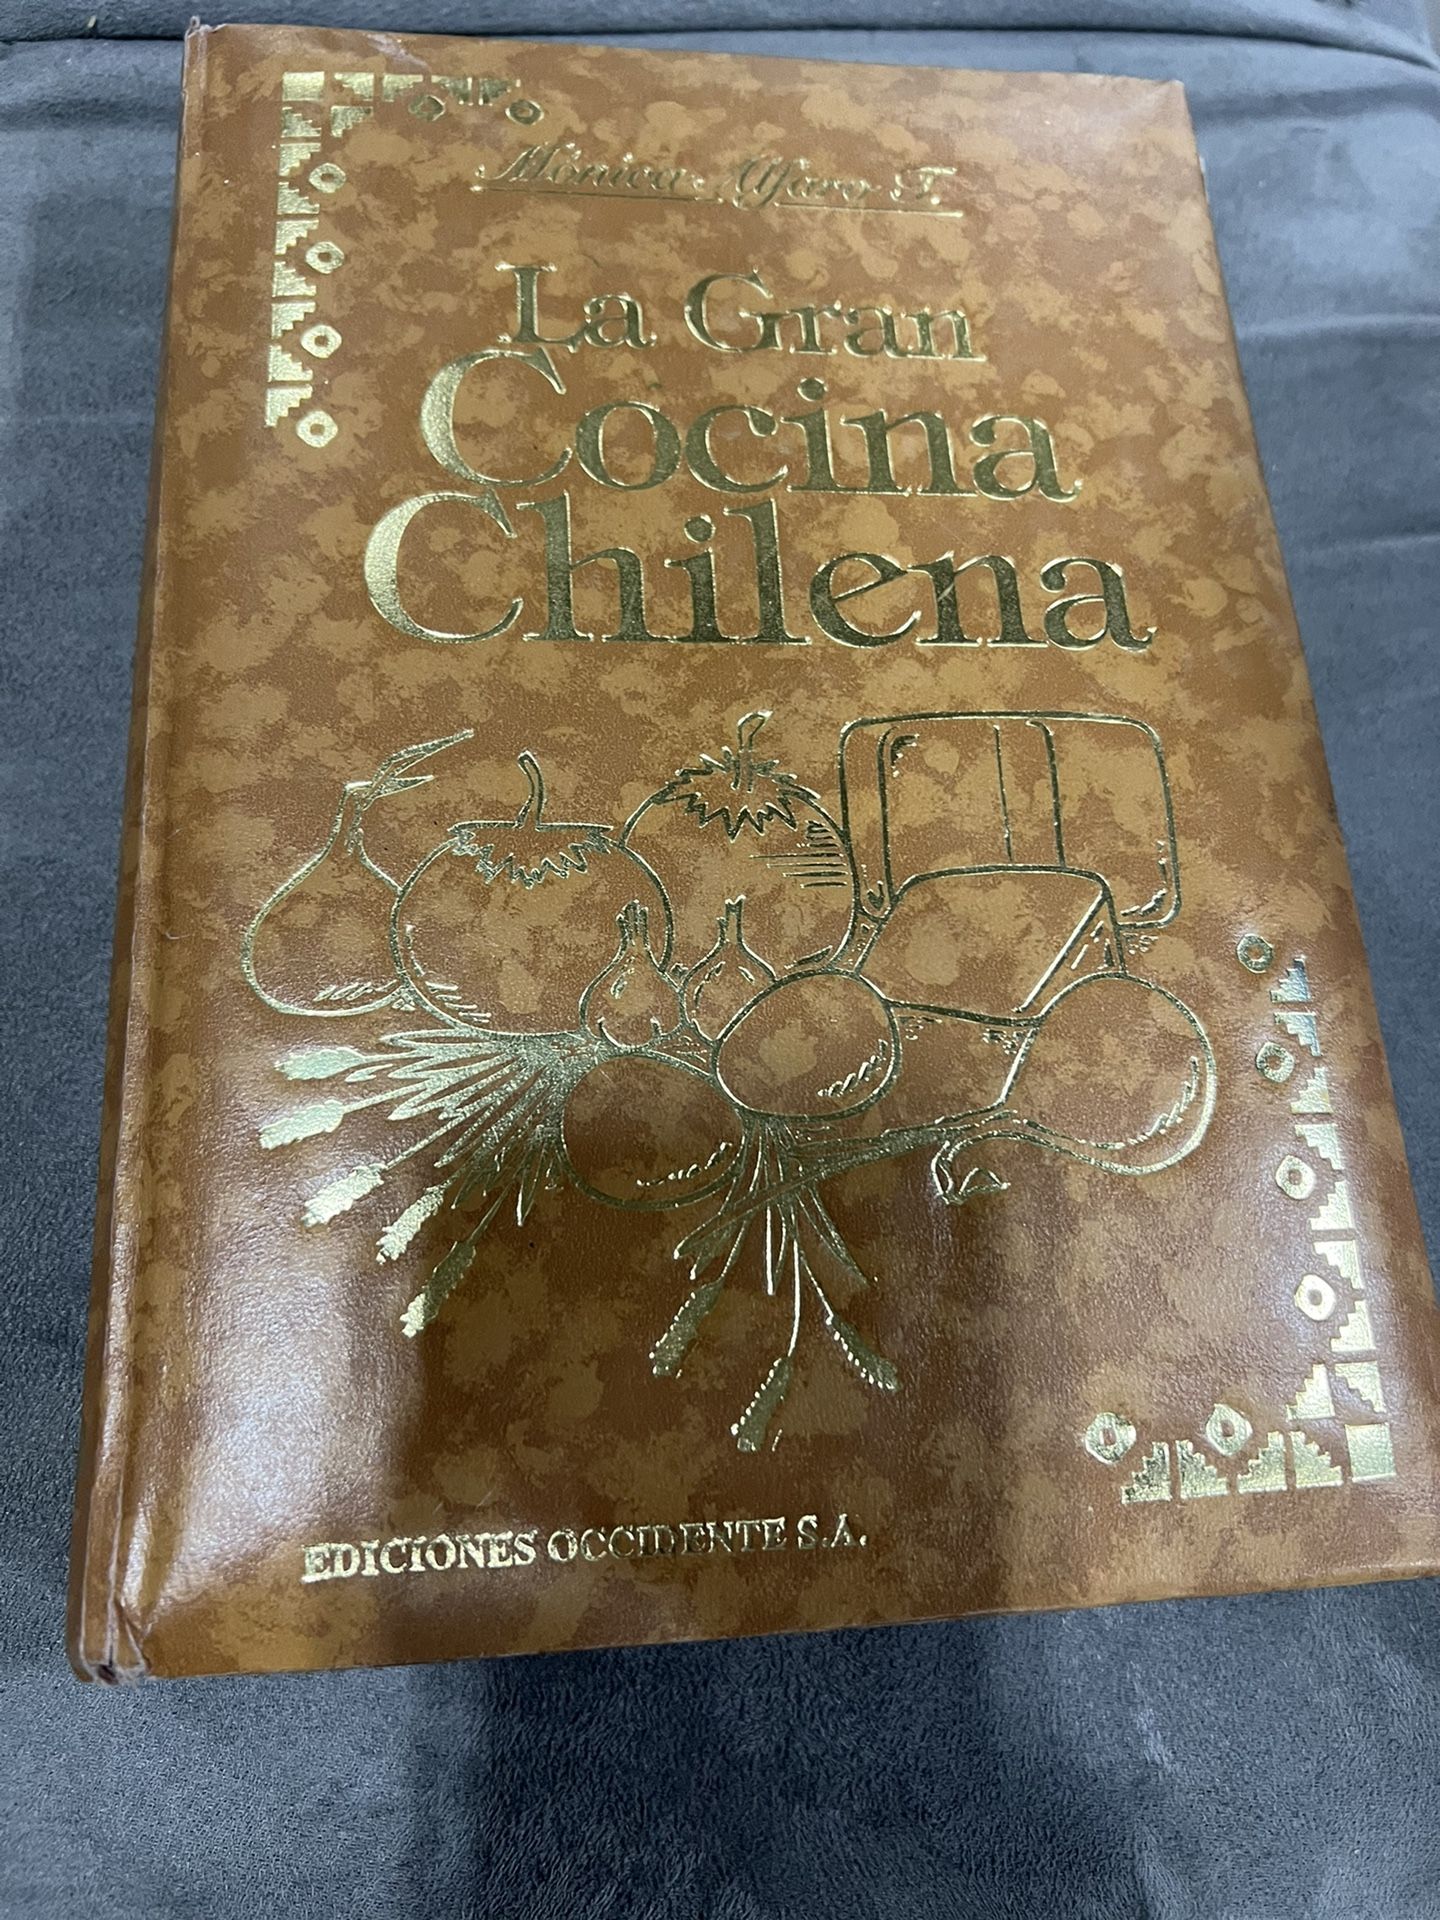 Cookbook   La Gran Cocina  Chilena